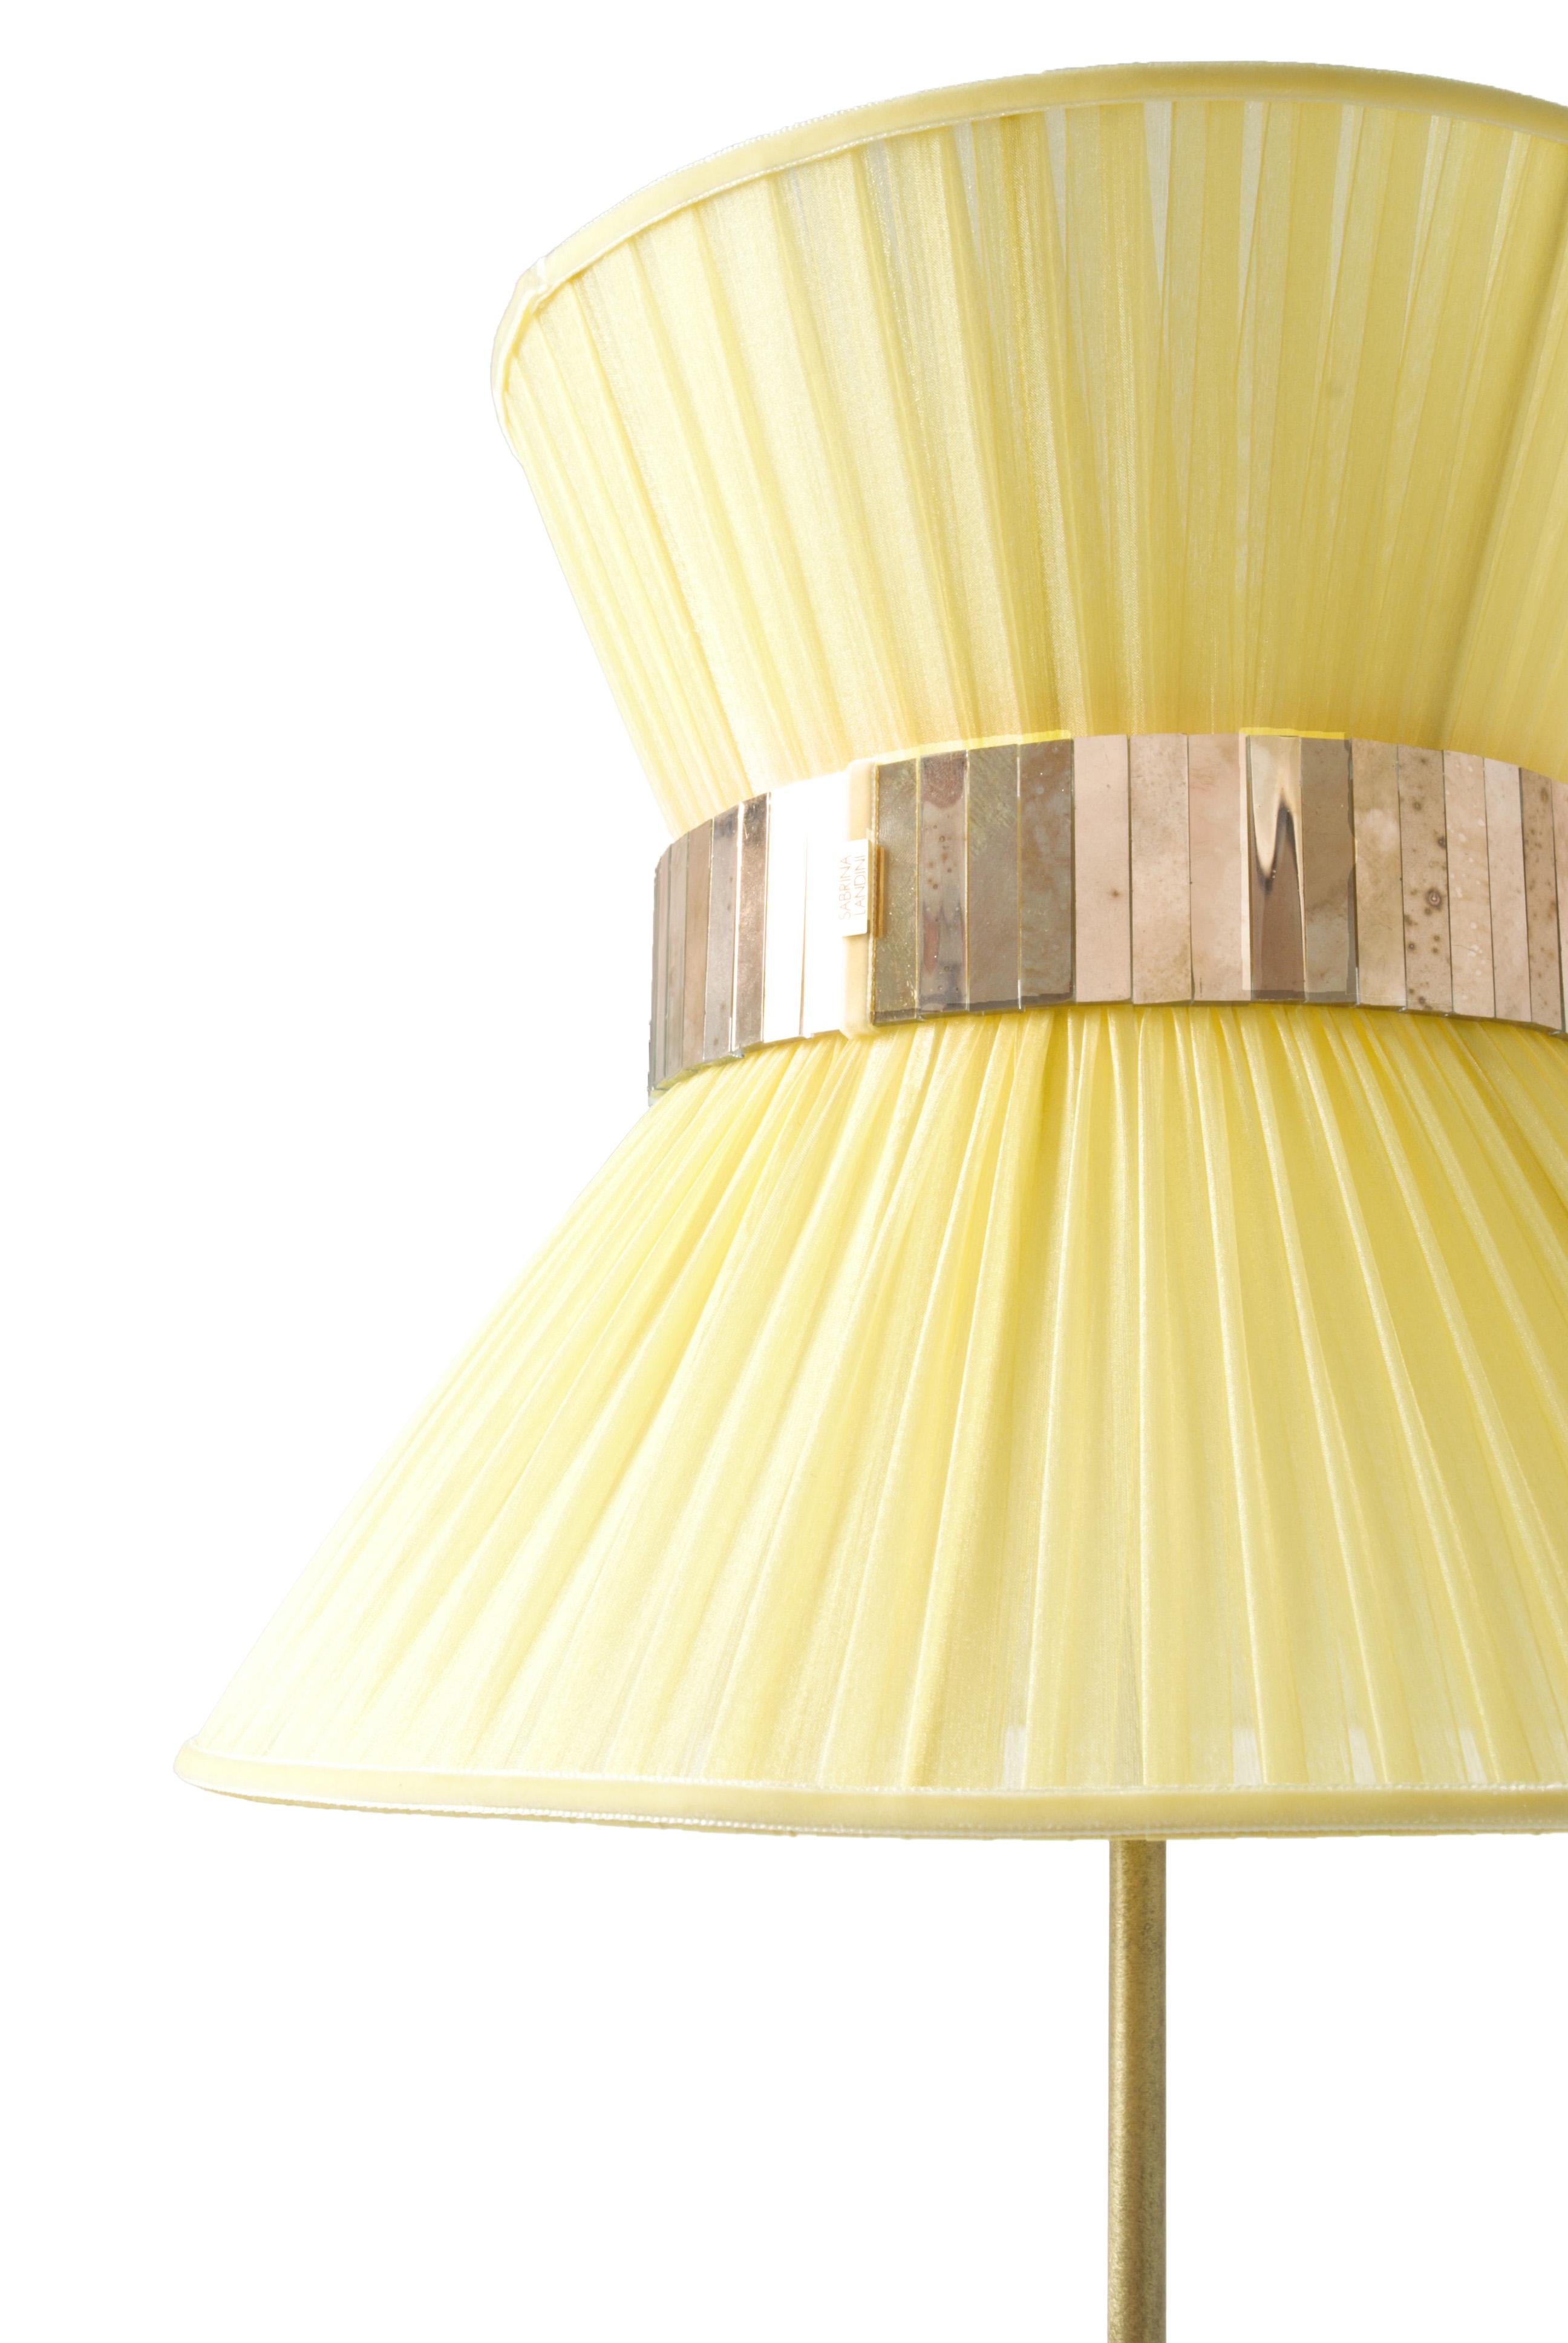 Tiffany, la lampe emblématique !

Depuis 20 ans, nous nous engageons à vous proposer des collections uniques en termes de design et de qualité. Utilisant une méthode d'argenture de fabrication ancestrale, tous nos produits emblématiques sont